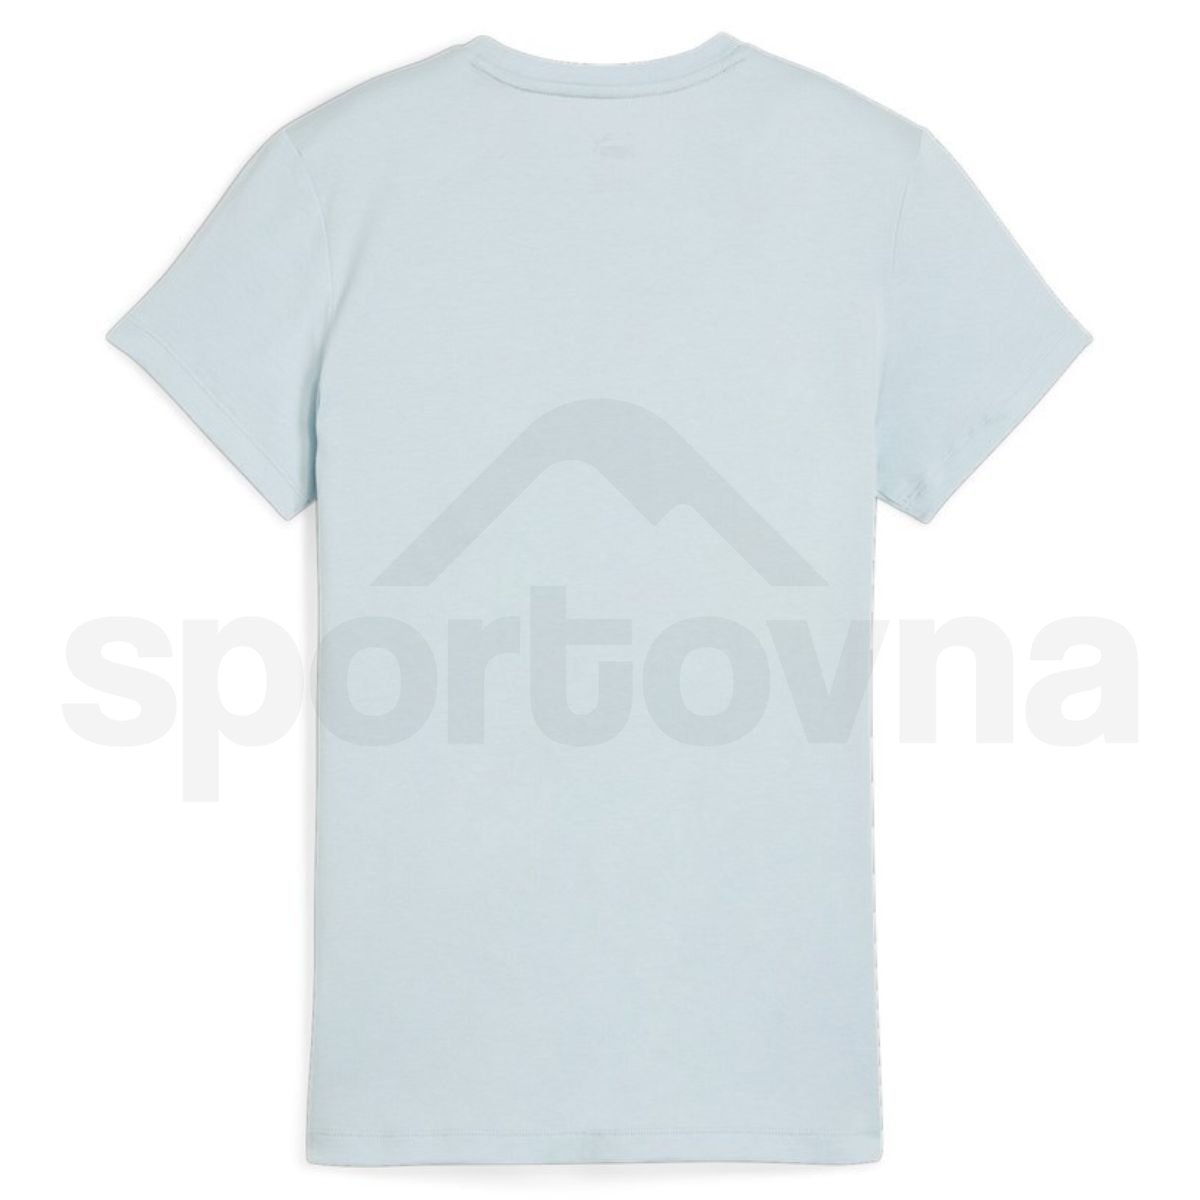 Tričko Puma ESS Logo Tee W - modrá